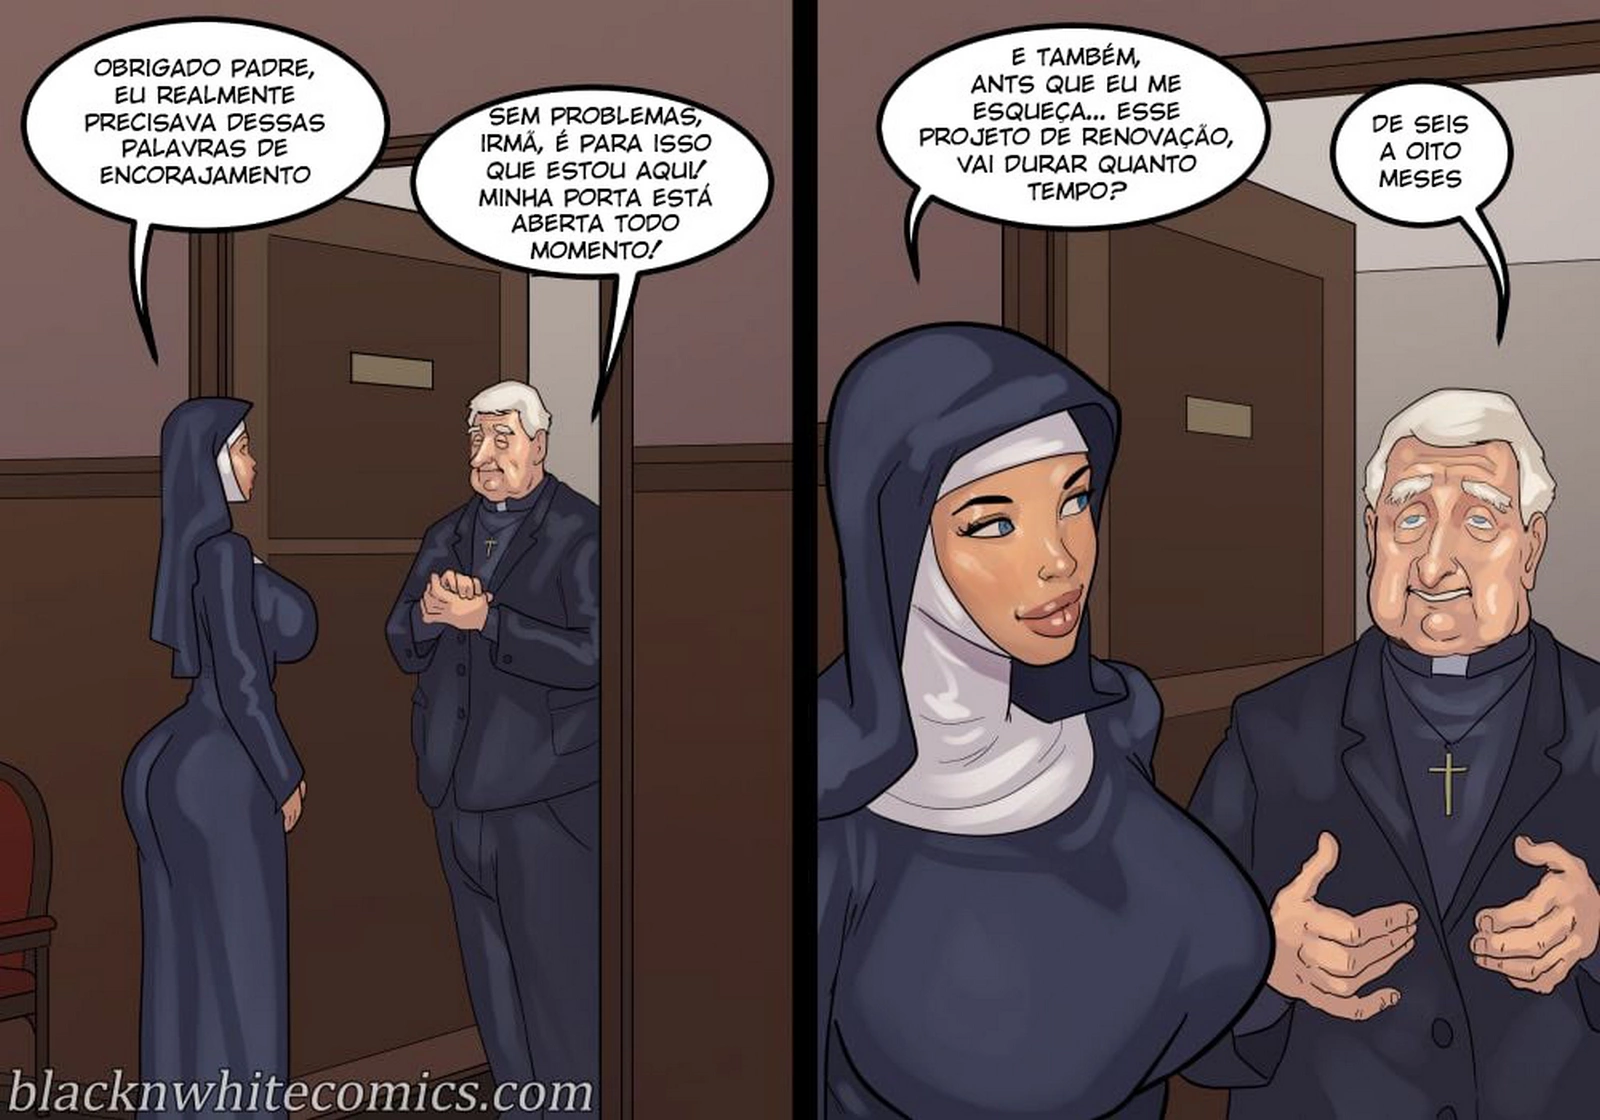 BlackNWhiteComics - A Devoção de uma freira safada